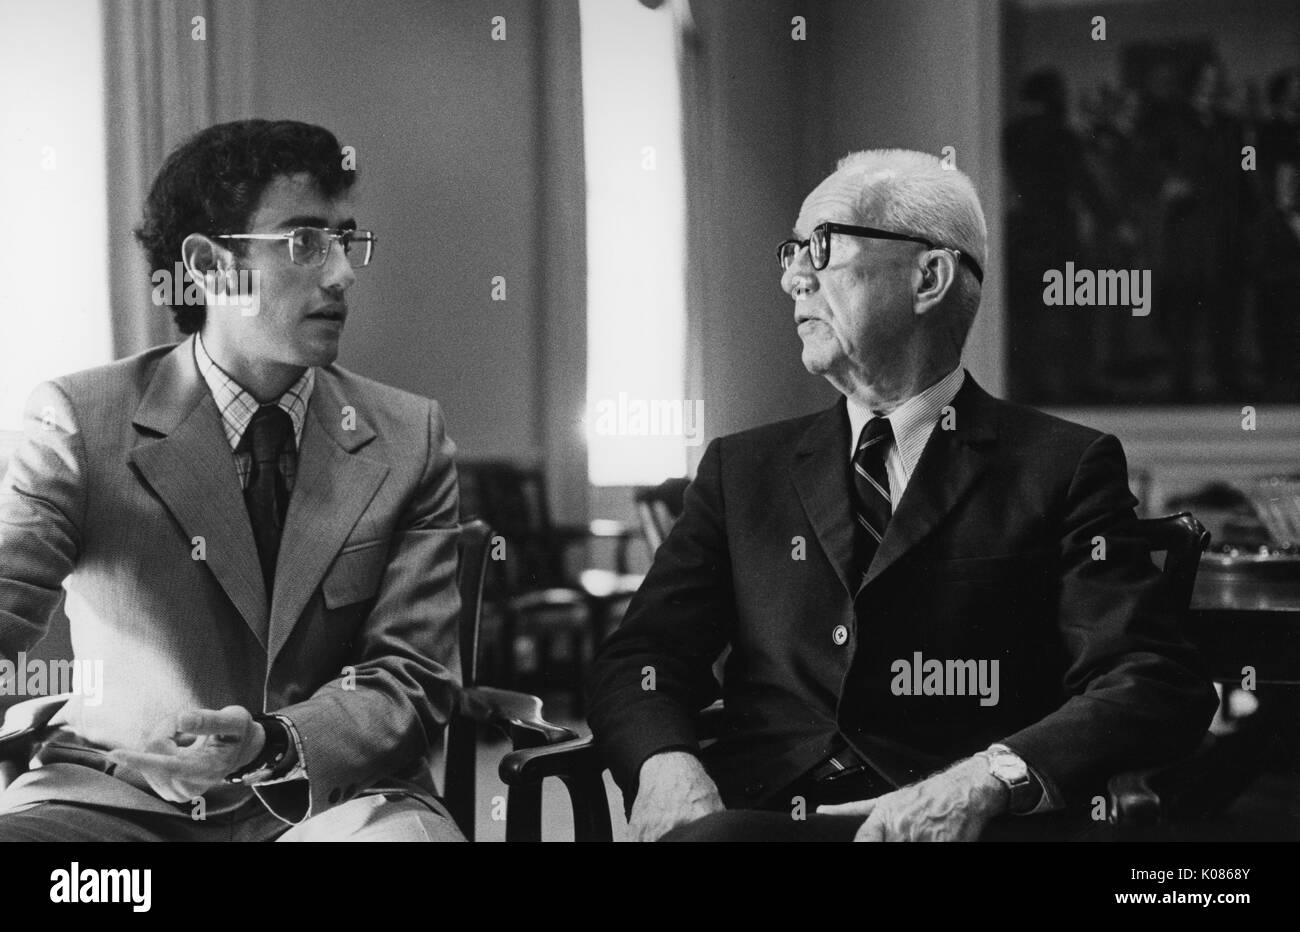 Portrait de mi-longueur de l'architecte Buckminster Fuller parlant avec un autre homme, Fuller portant un costume sombre avec une chemise blanche et une cravate rayée, porter des lunettes, assis dans une chaise en bois et en face de l'autre homme, 1970. Banque D'Images